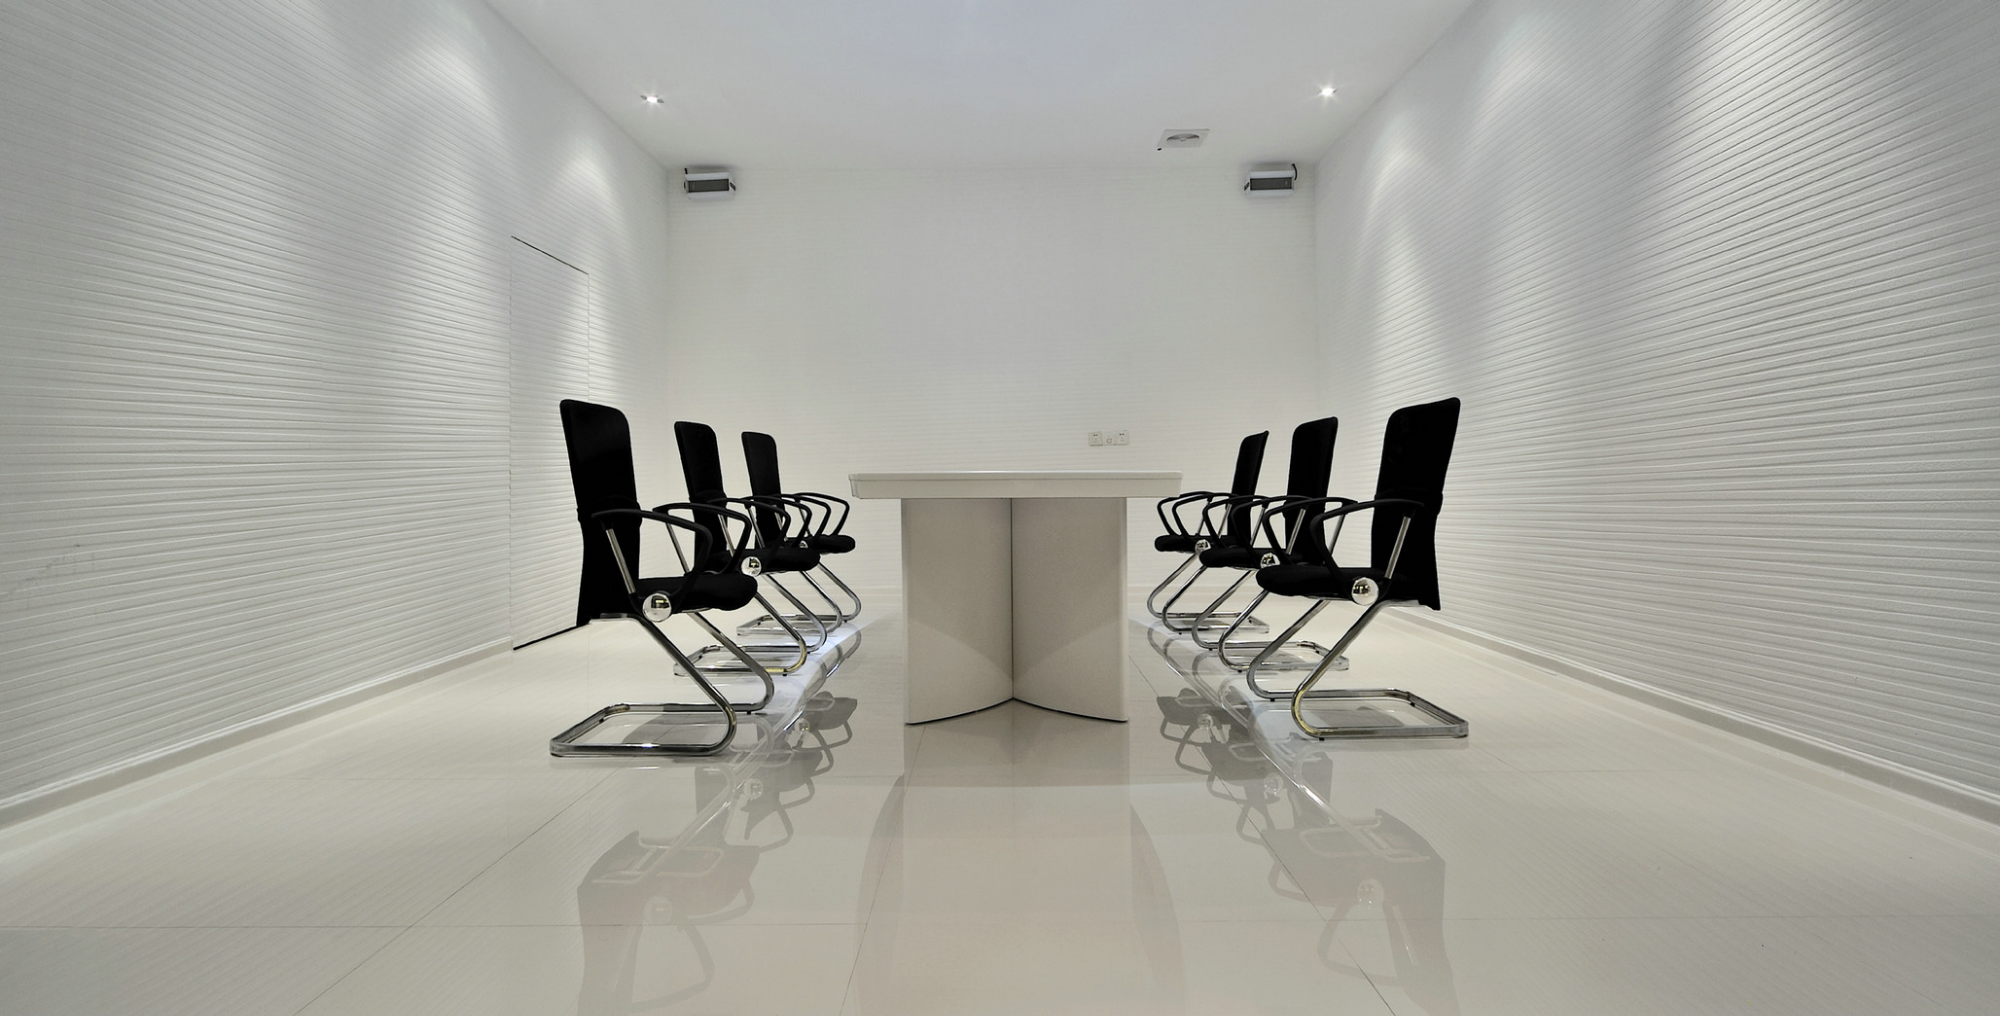 寶安區專業辦公室裝修設計一體化服務,辦公室裝修設計